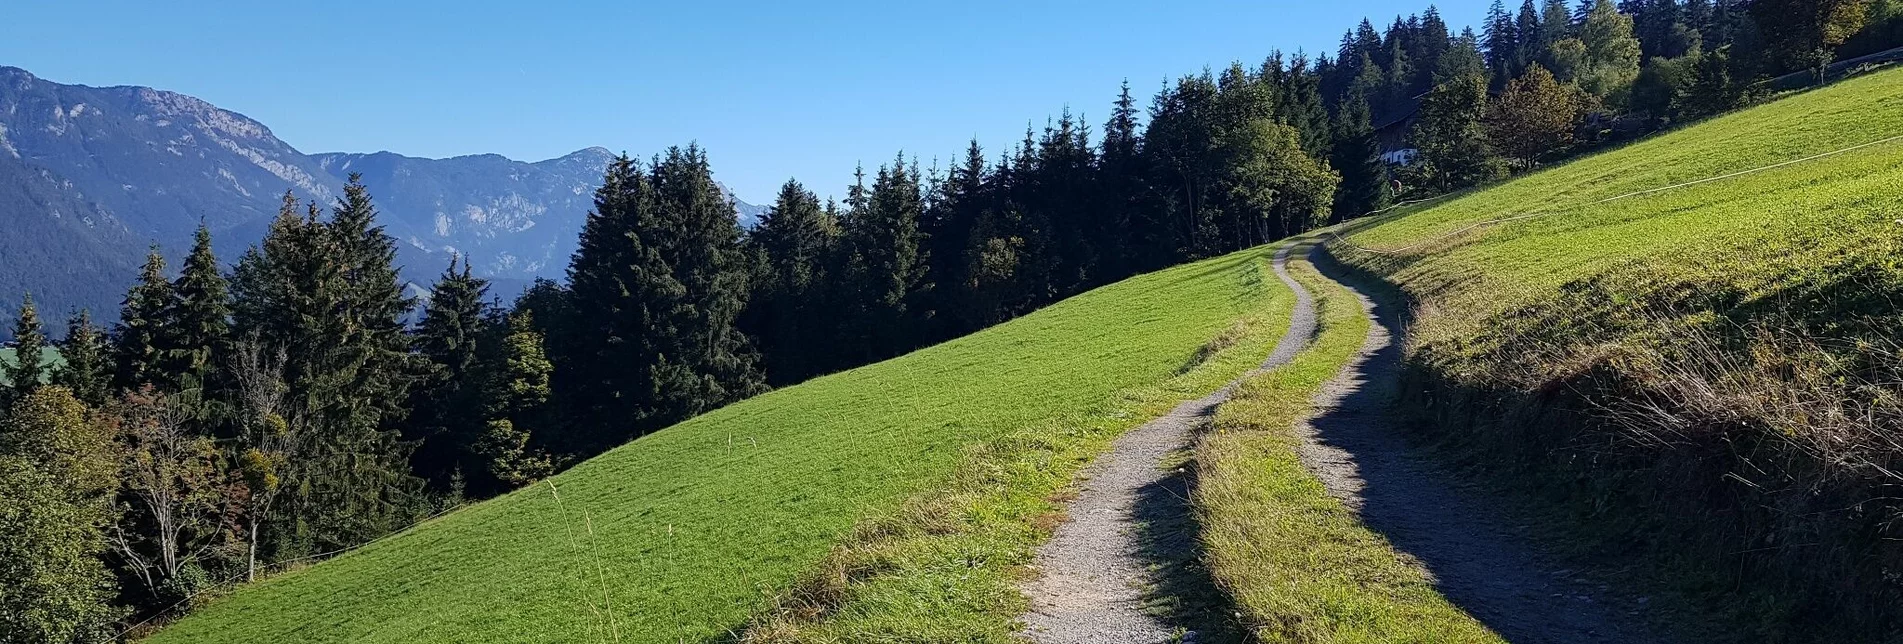 Hiking route Trail n° 50 to Planai - Touren-Impression #1 | © Gerhard Pilz